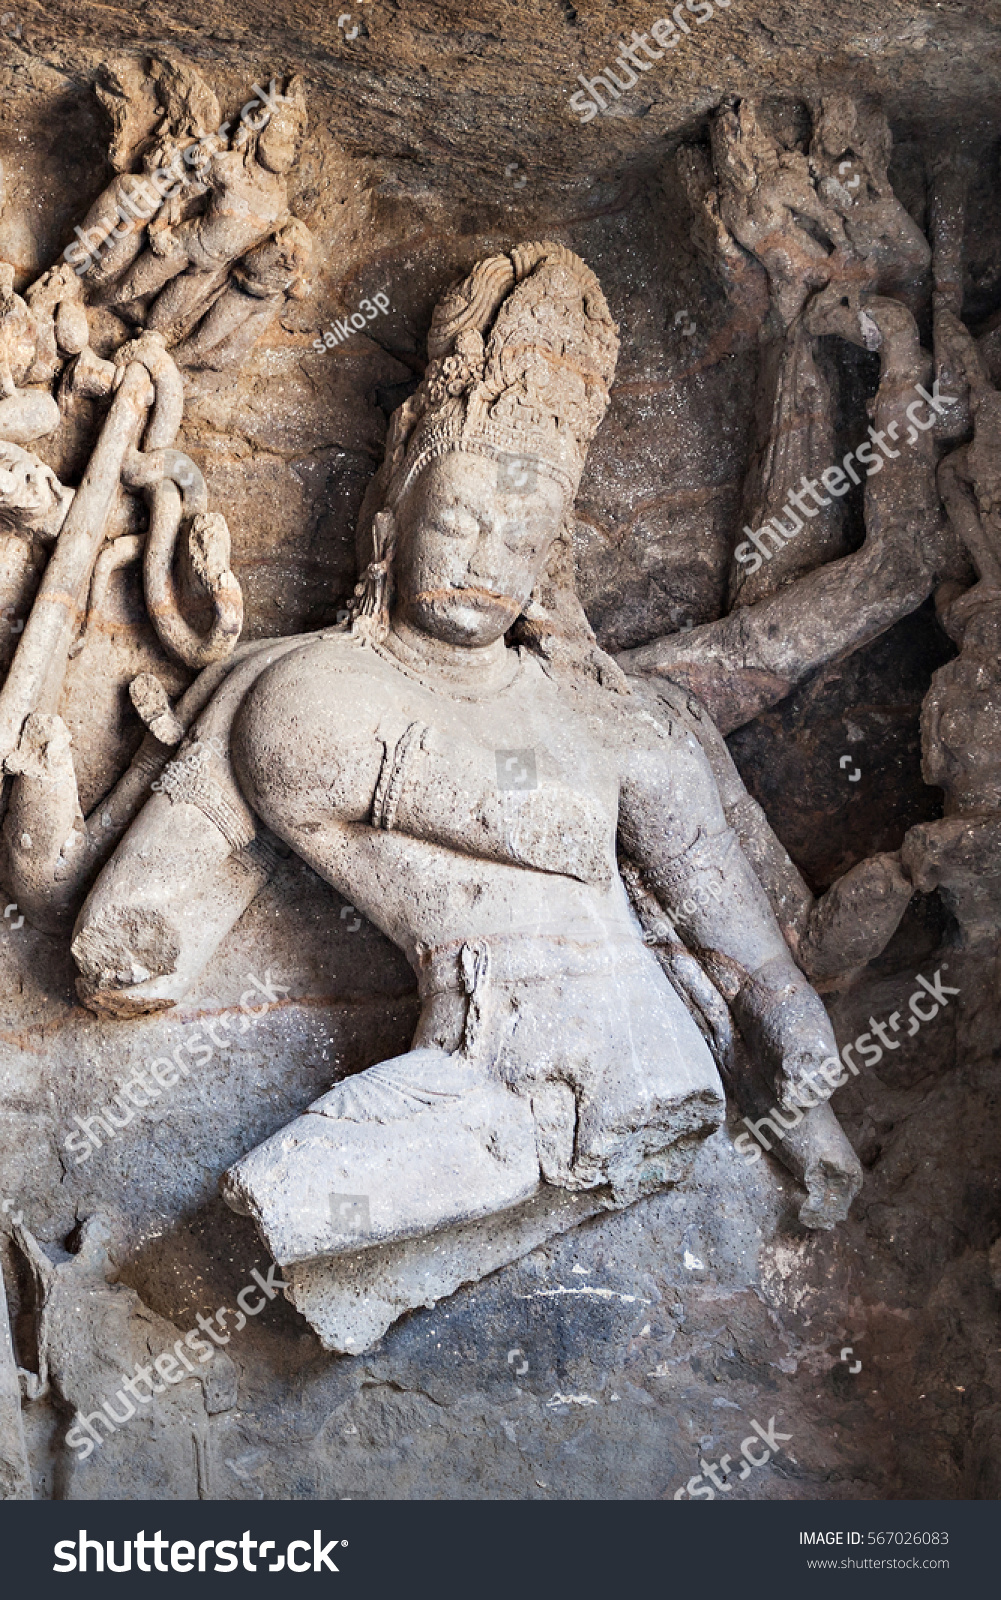 Shiva as Nataraja sculpture inside Elephanta Island caves near Mumbai in Maharashtra state, India #567026083